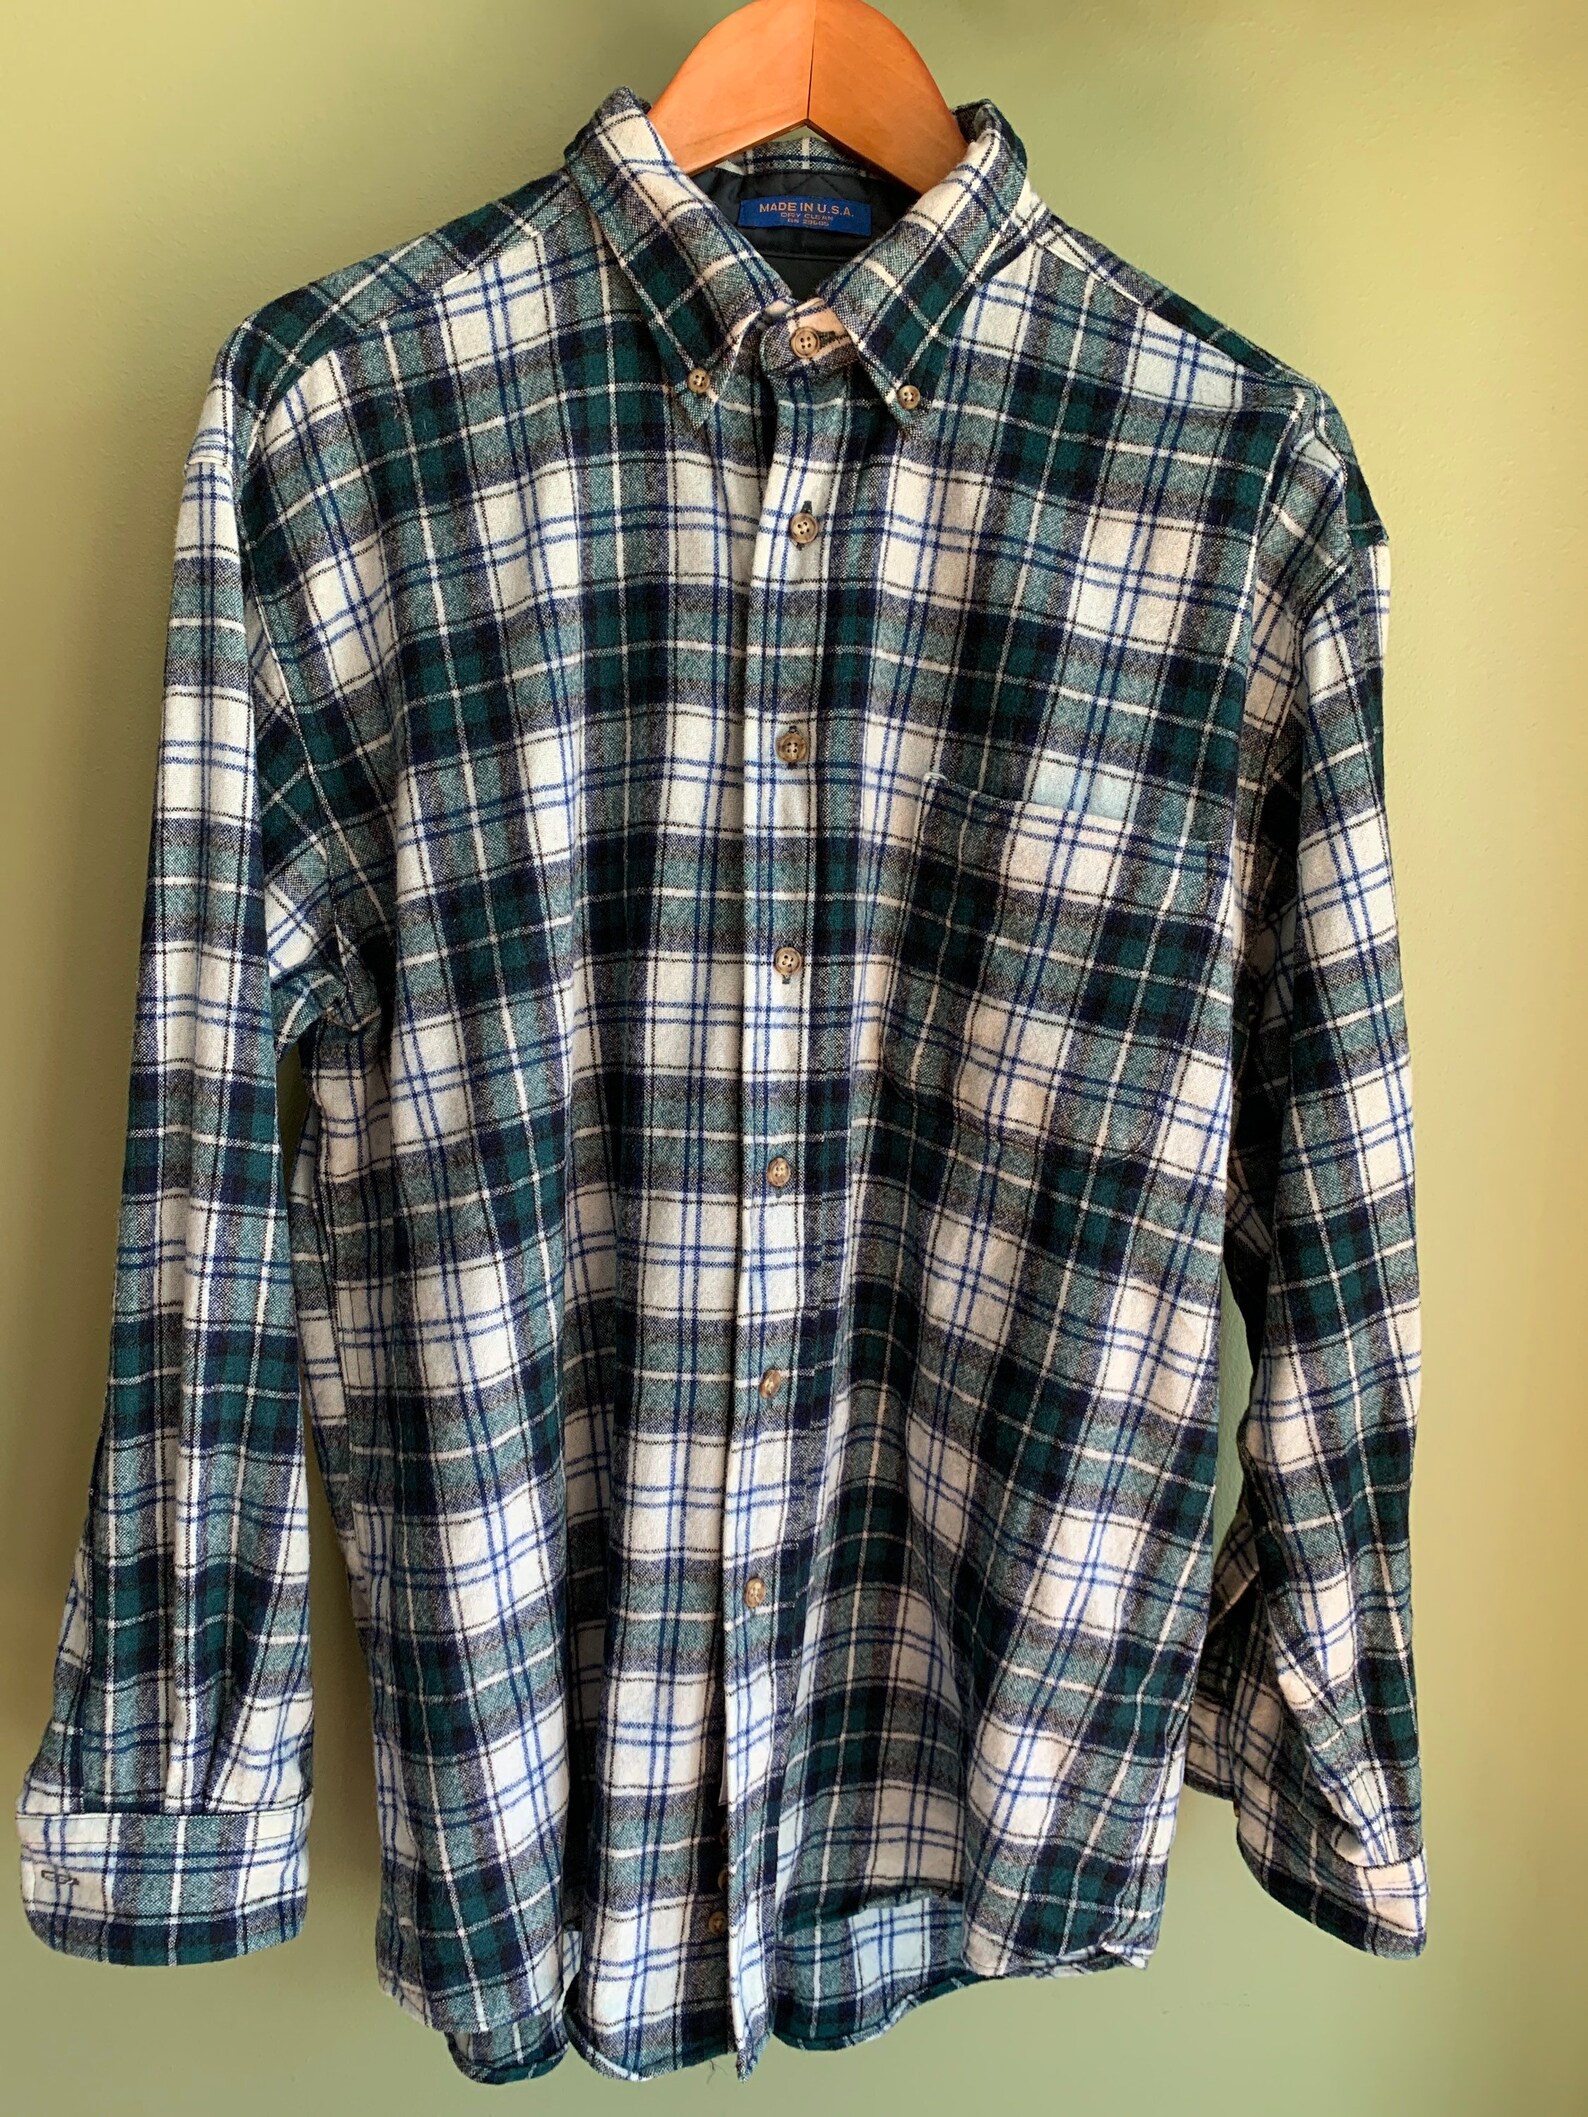 Vintage Pendleton Wool Tartan Shirt sz L Made in USA Unisex | Etsy